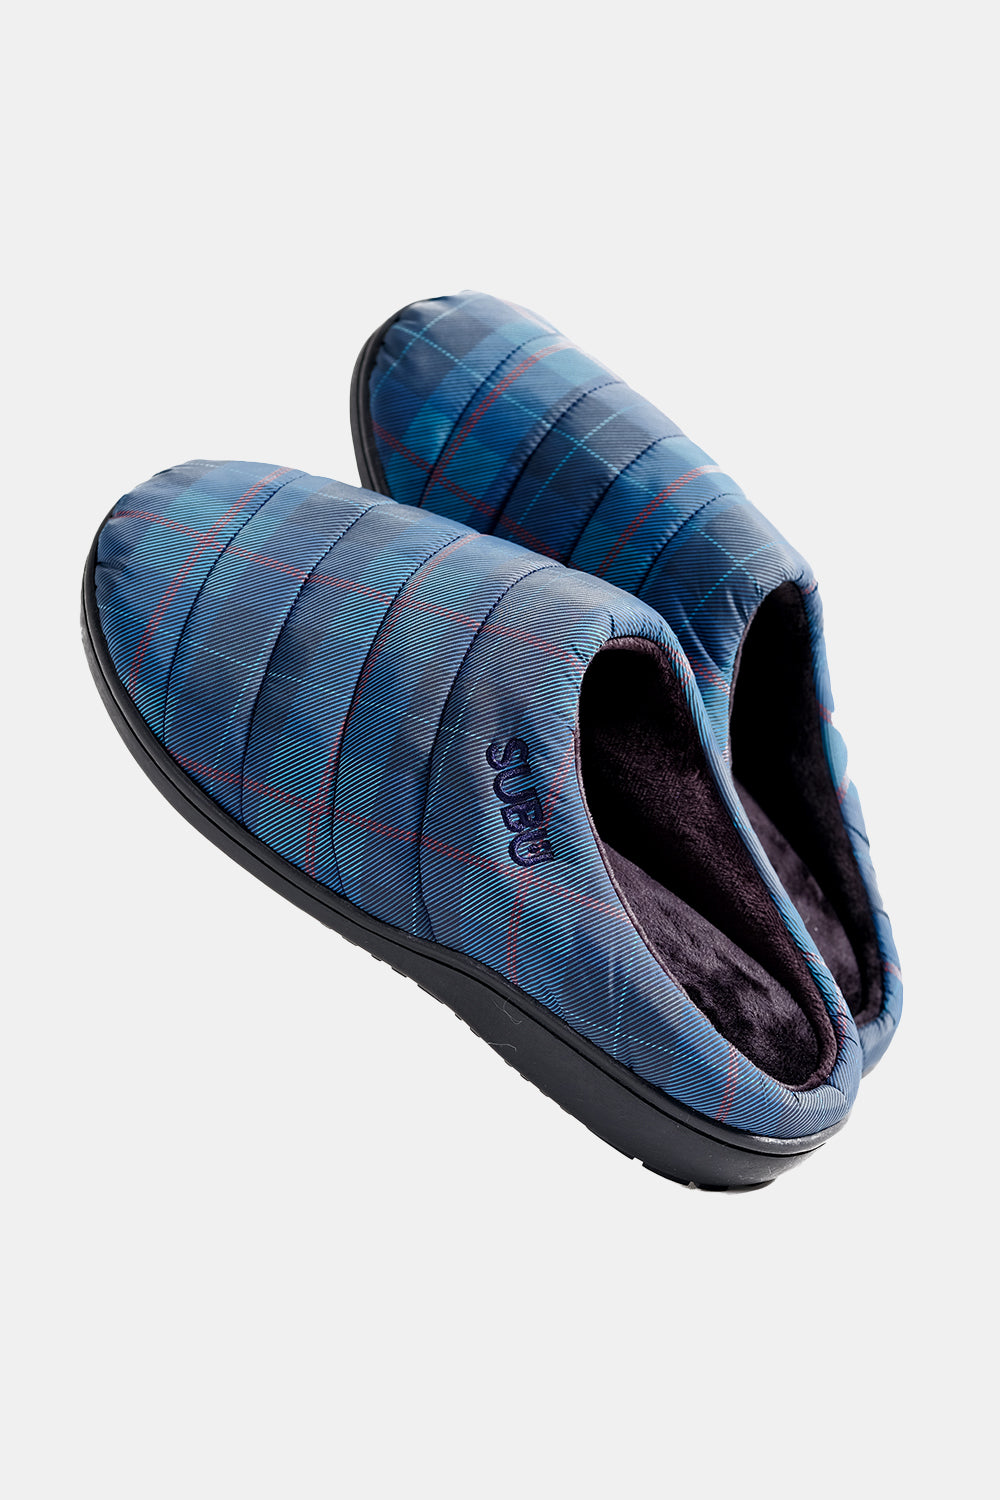 SUBU Indoor Outdoor Slippers (Tartan)